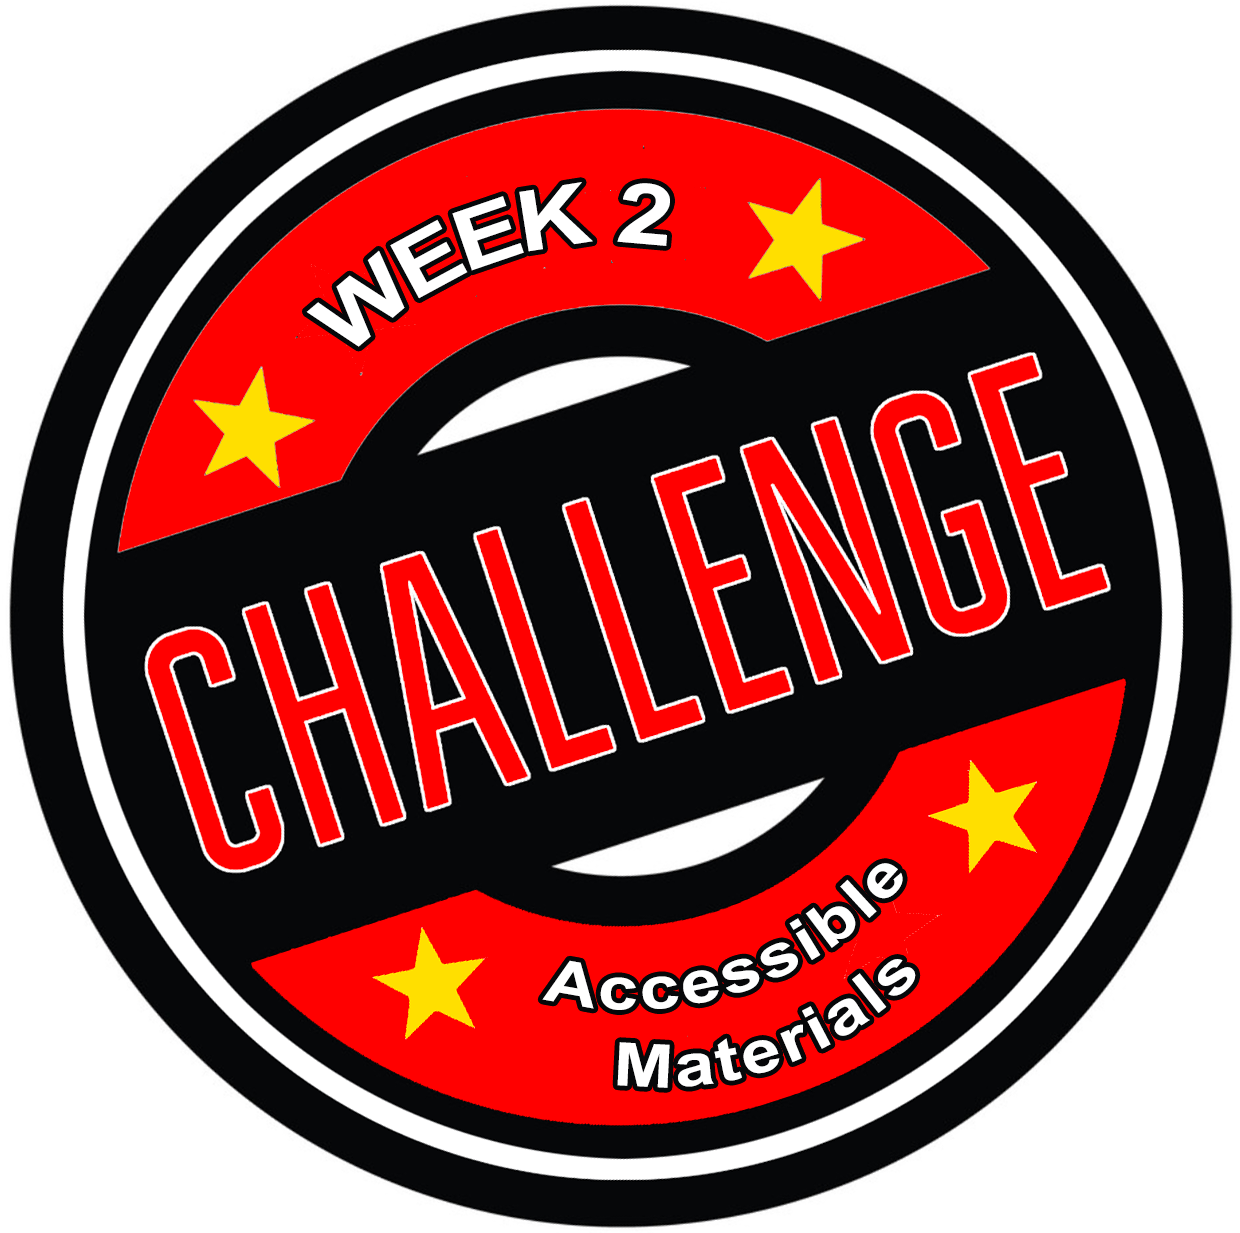 Week 2 Challenge Icon